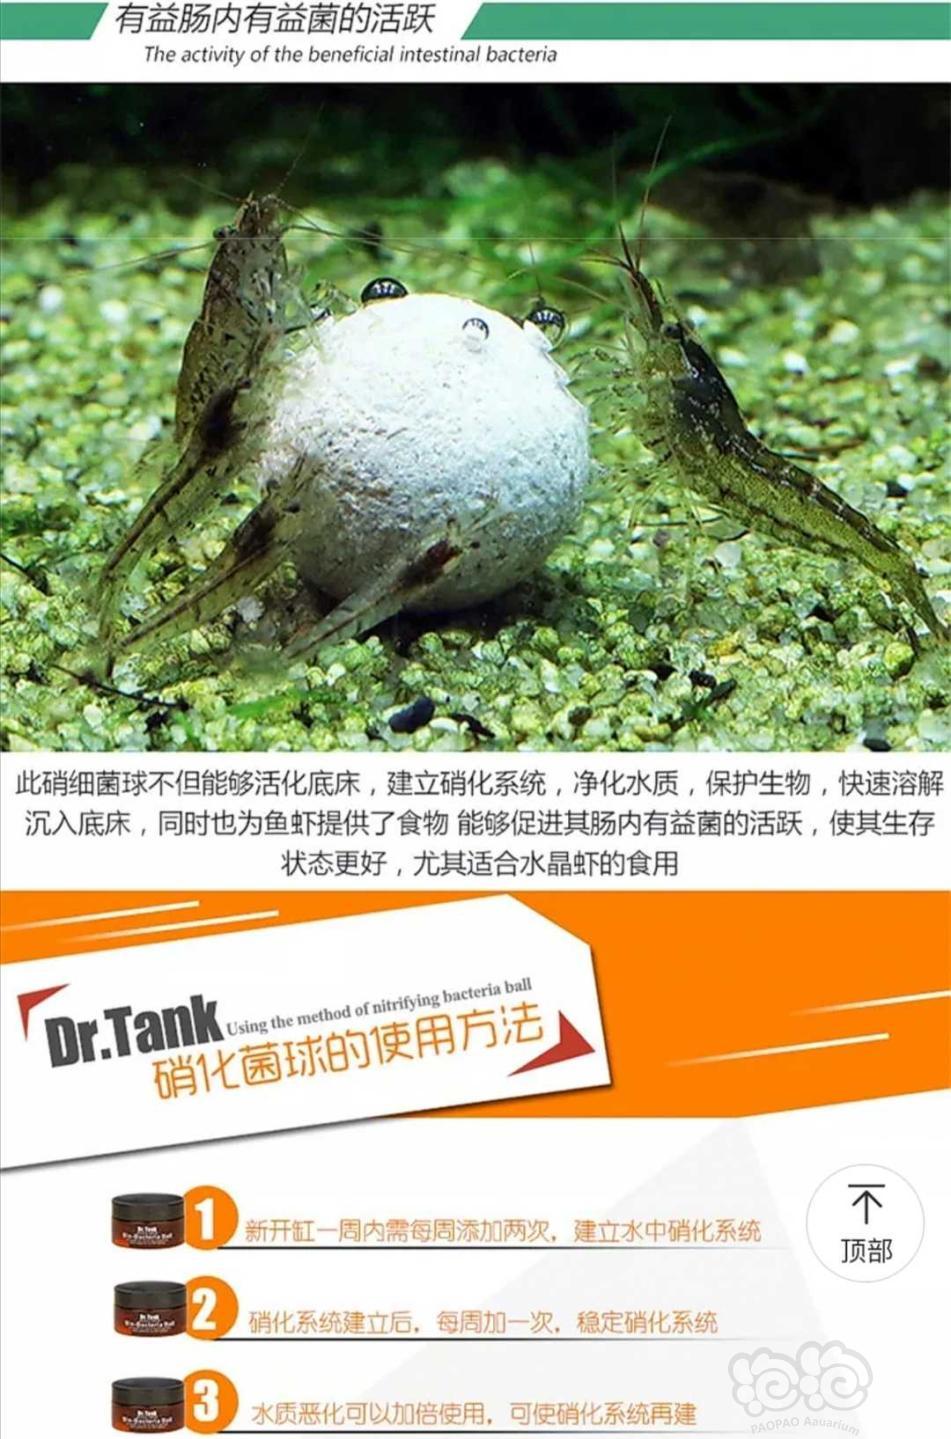 【用品】2019-10-29#RMB拍卖坦克二代硝化细菌球三粒装*3盒-图2